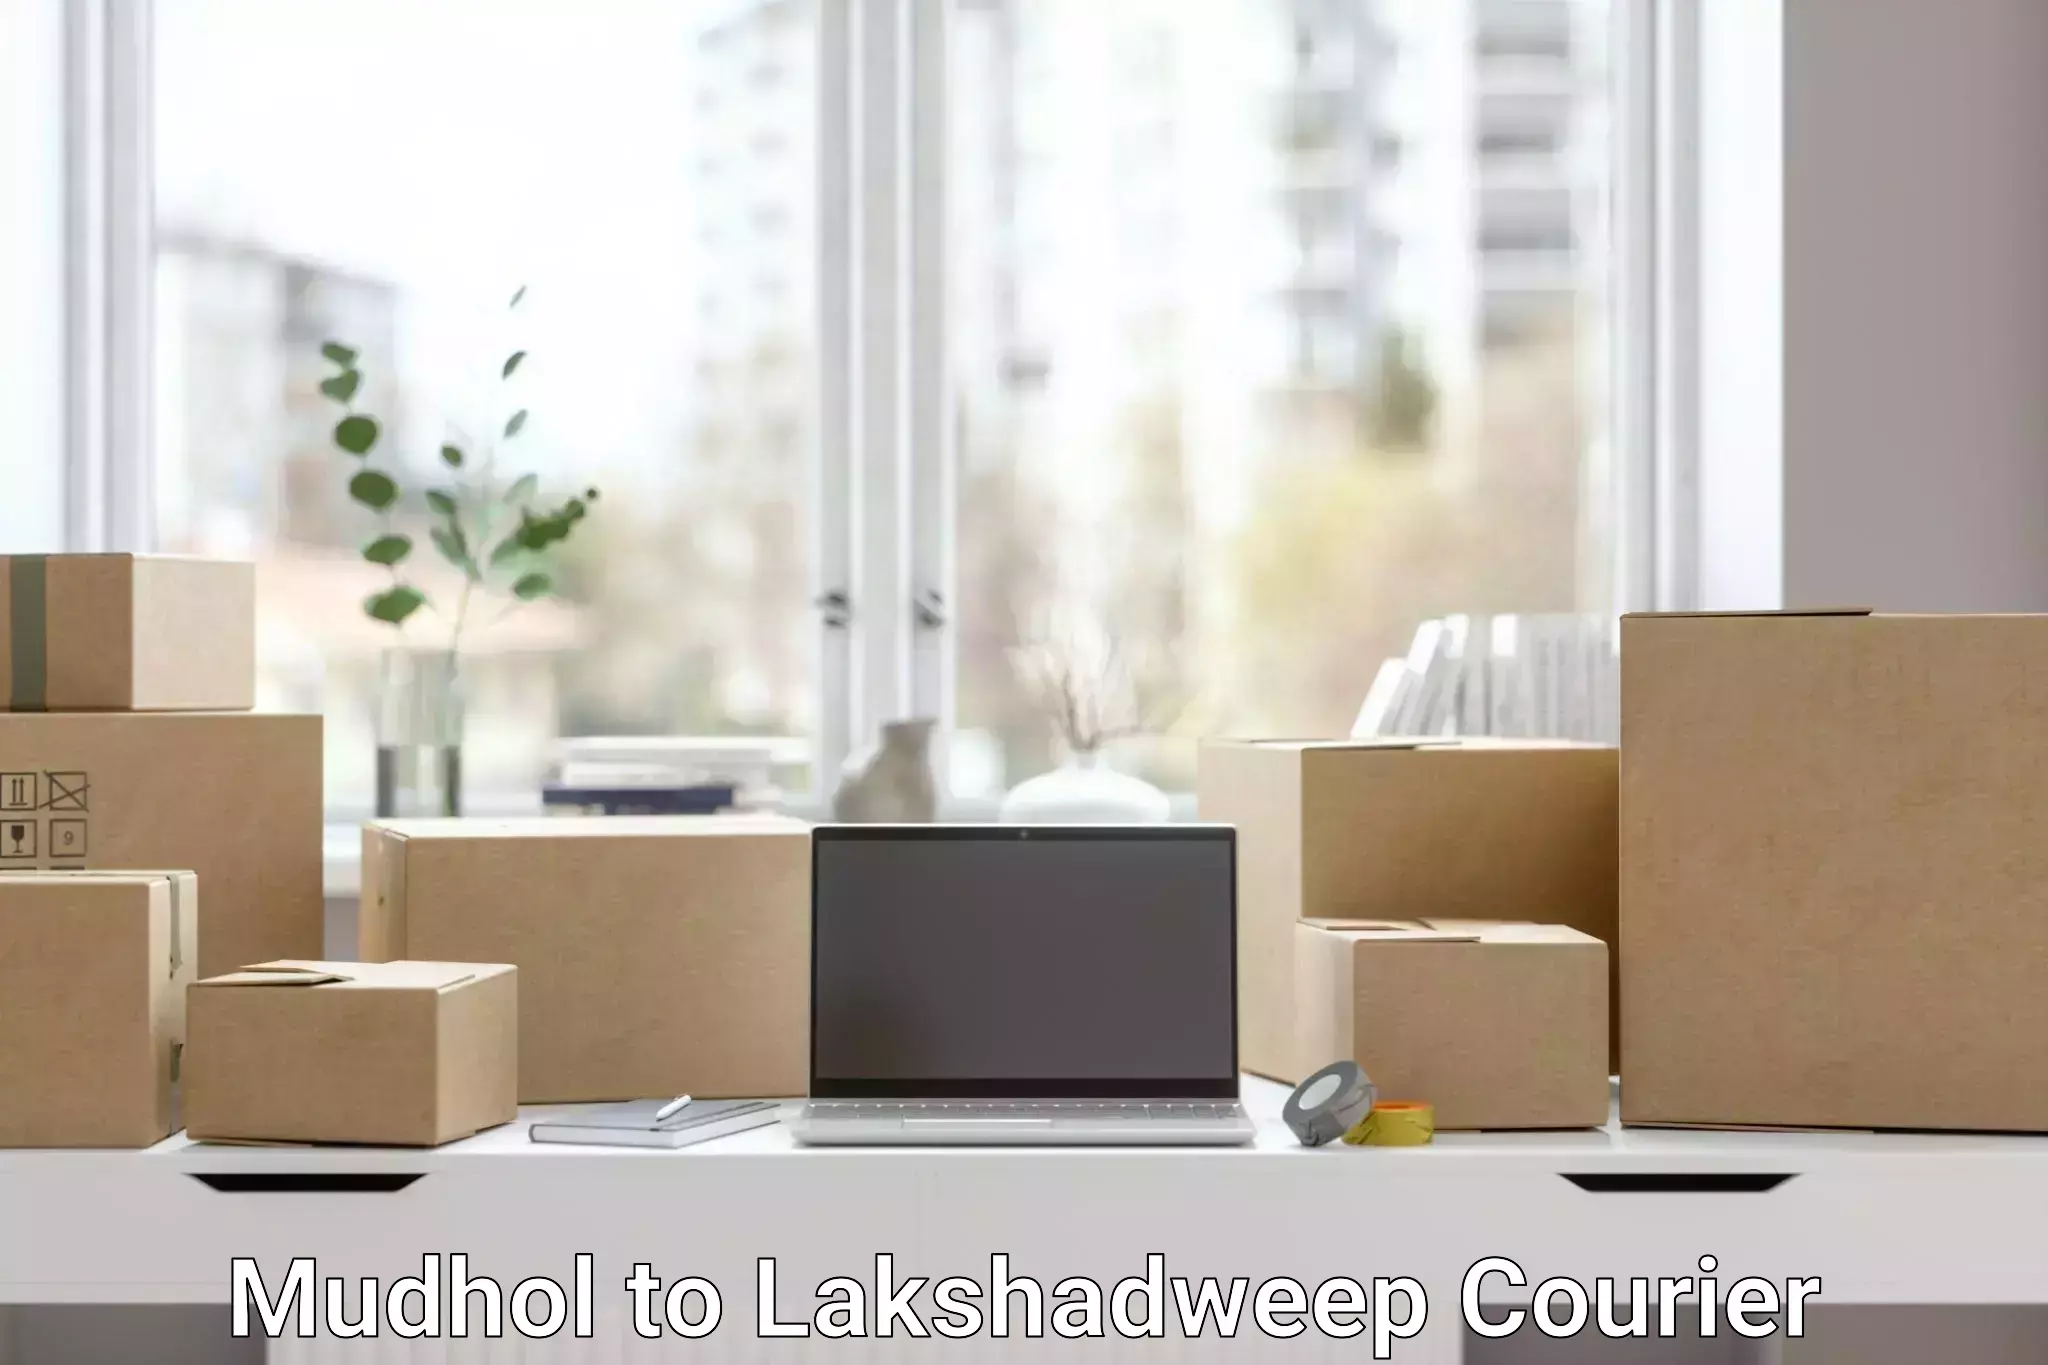 24-hour delivery options Mudhol to Lakshadweep